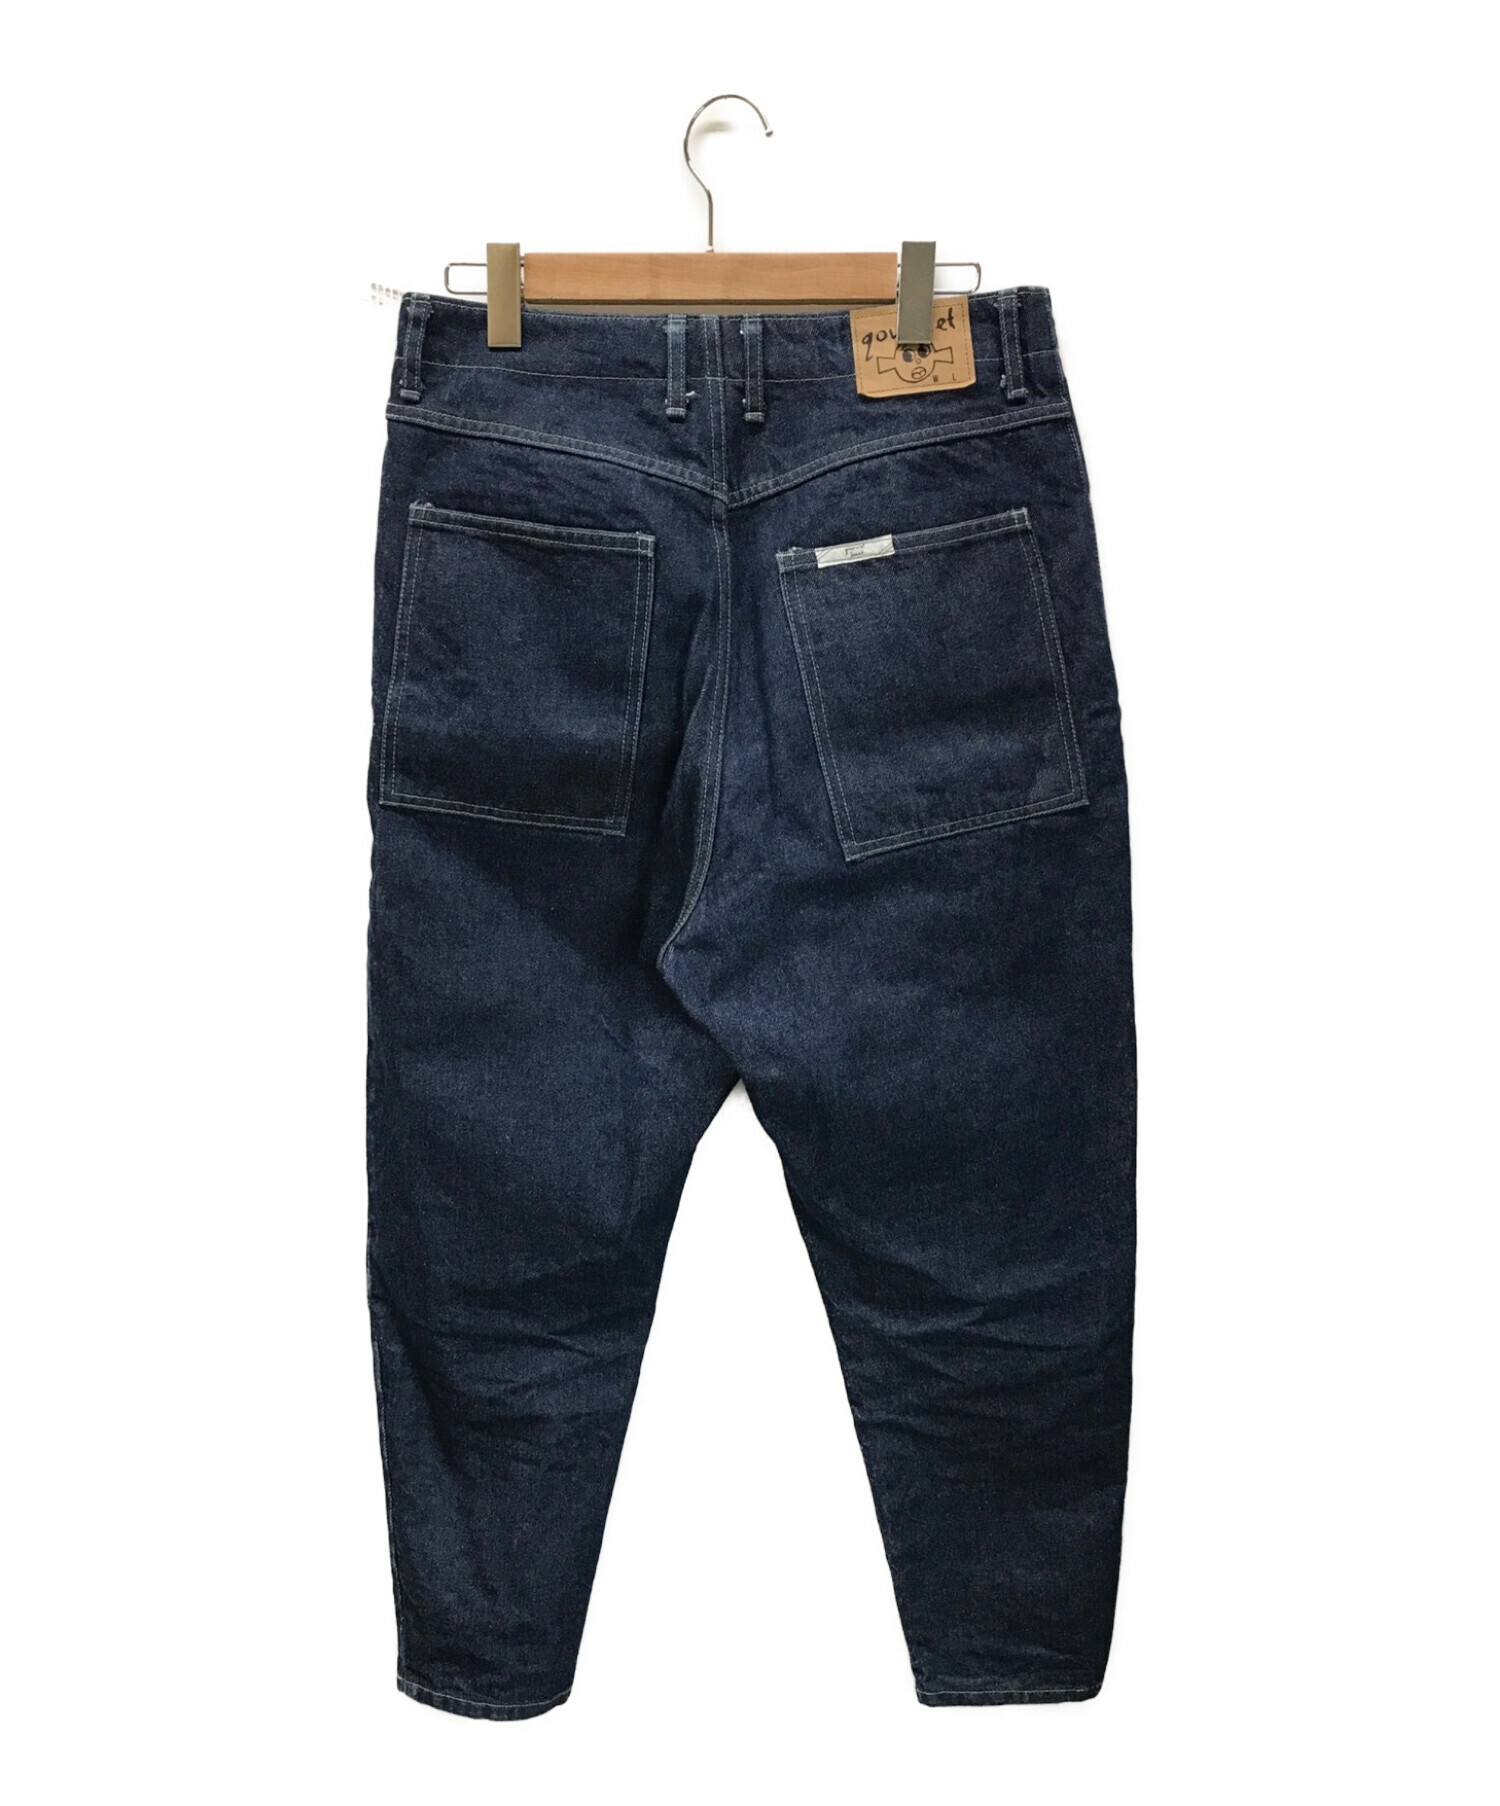 グルメジーンズ　gourmet jeans LEAN 32